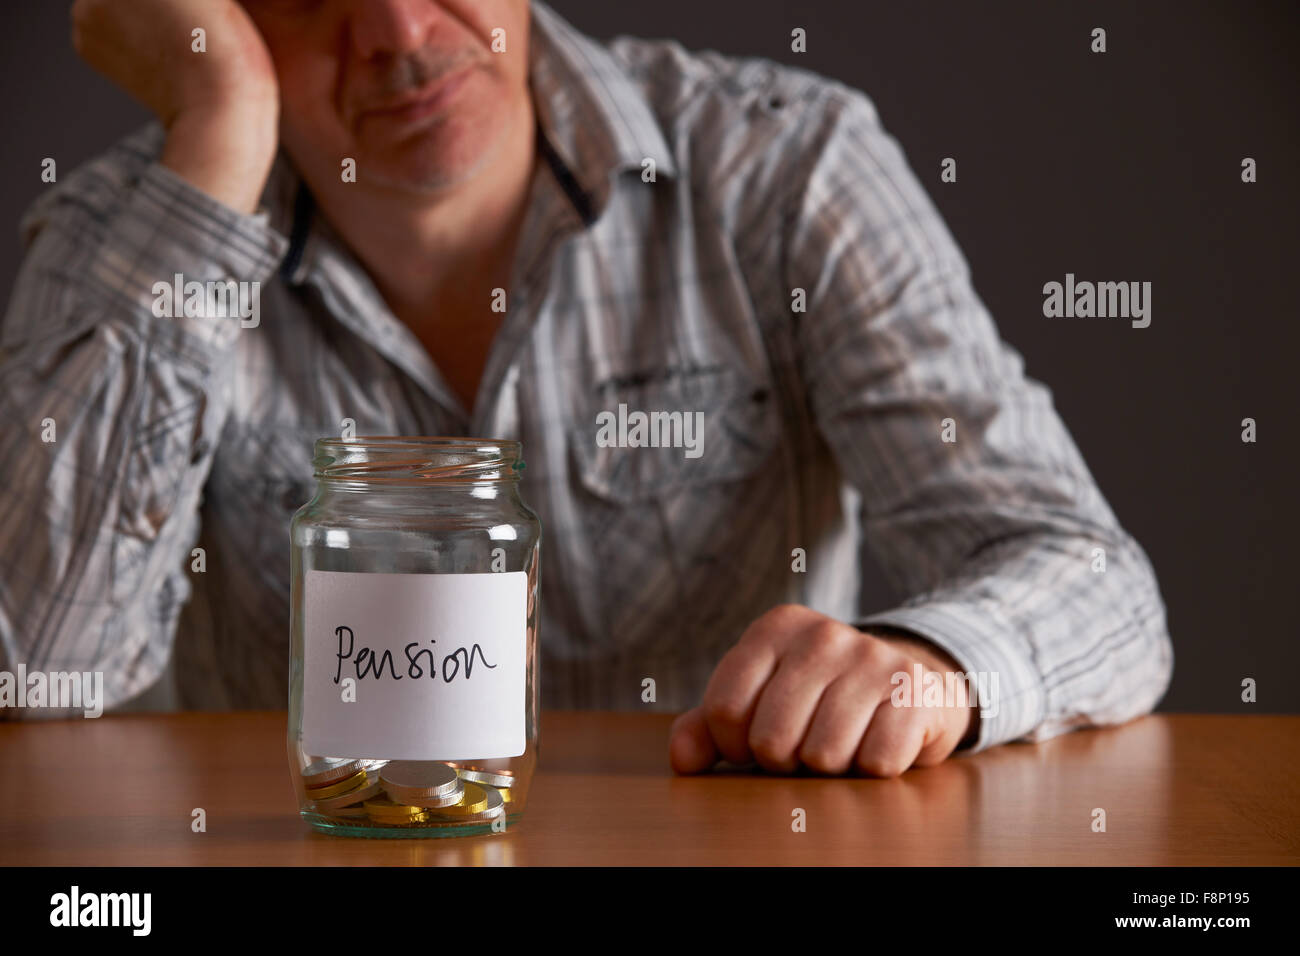 Premuto Un uomo guarda il vaso vuoto etichettati Pension Foto Stock